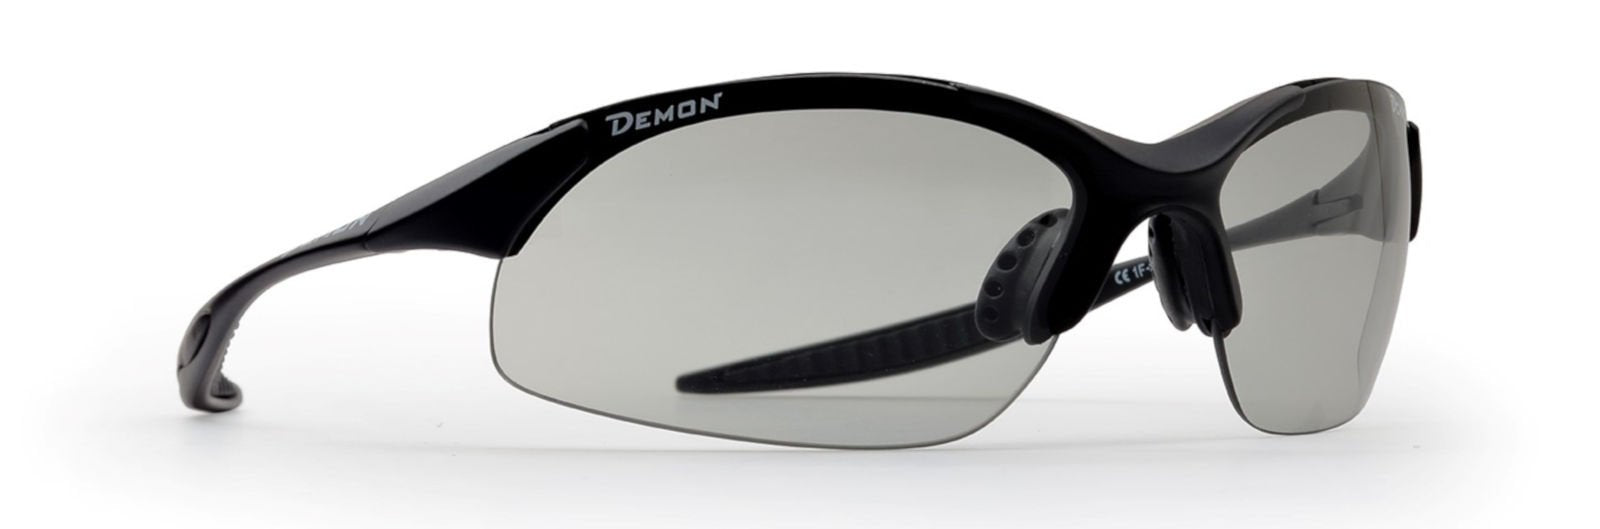 occhiale per trail running lenti fotocromatiche dchrom modello 832 colore nero opaco